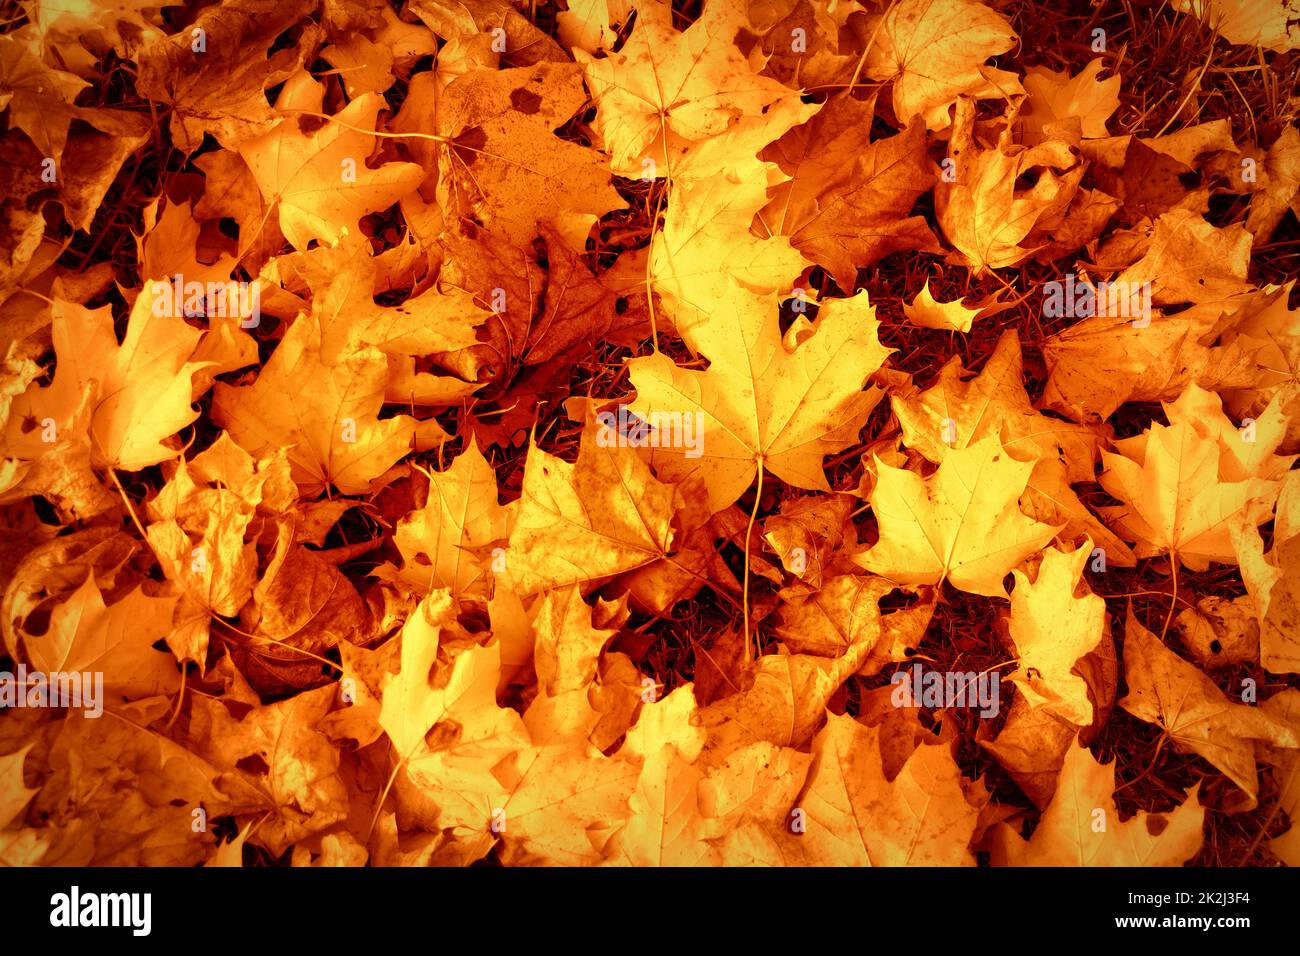 L'autunno lascia lo sfondo. Immagine colorata sul retro delle foglie autunnali cadute, perfetta per l'uso stagionale. Foto Stock